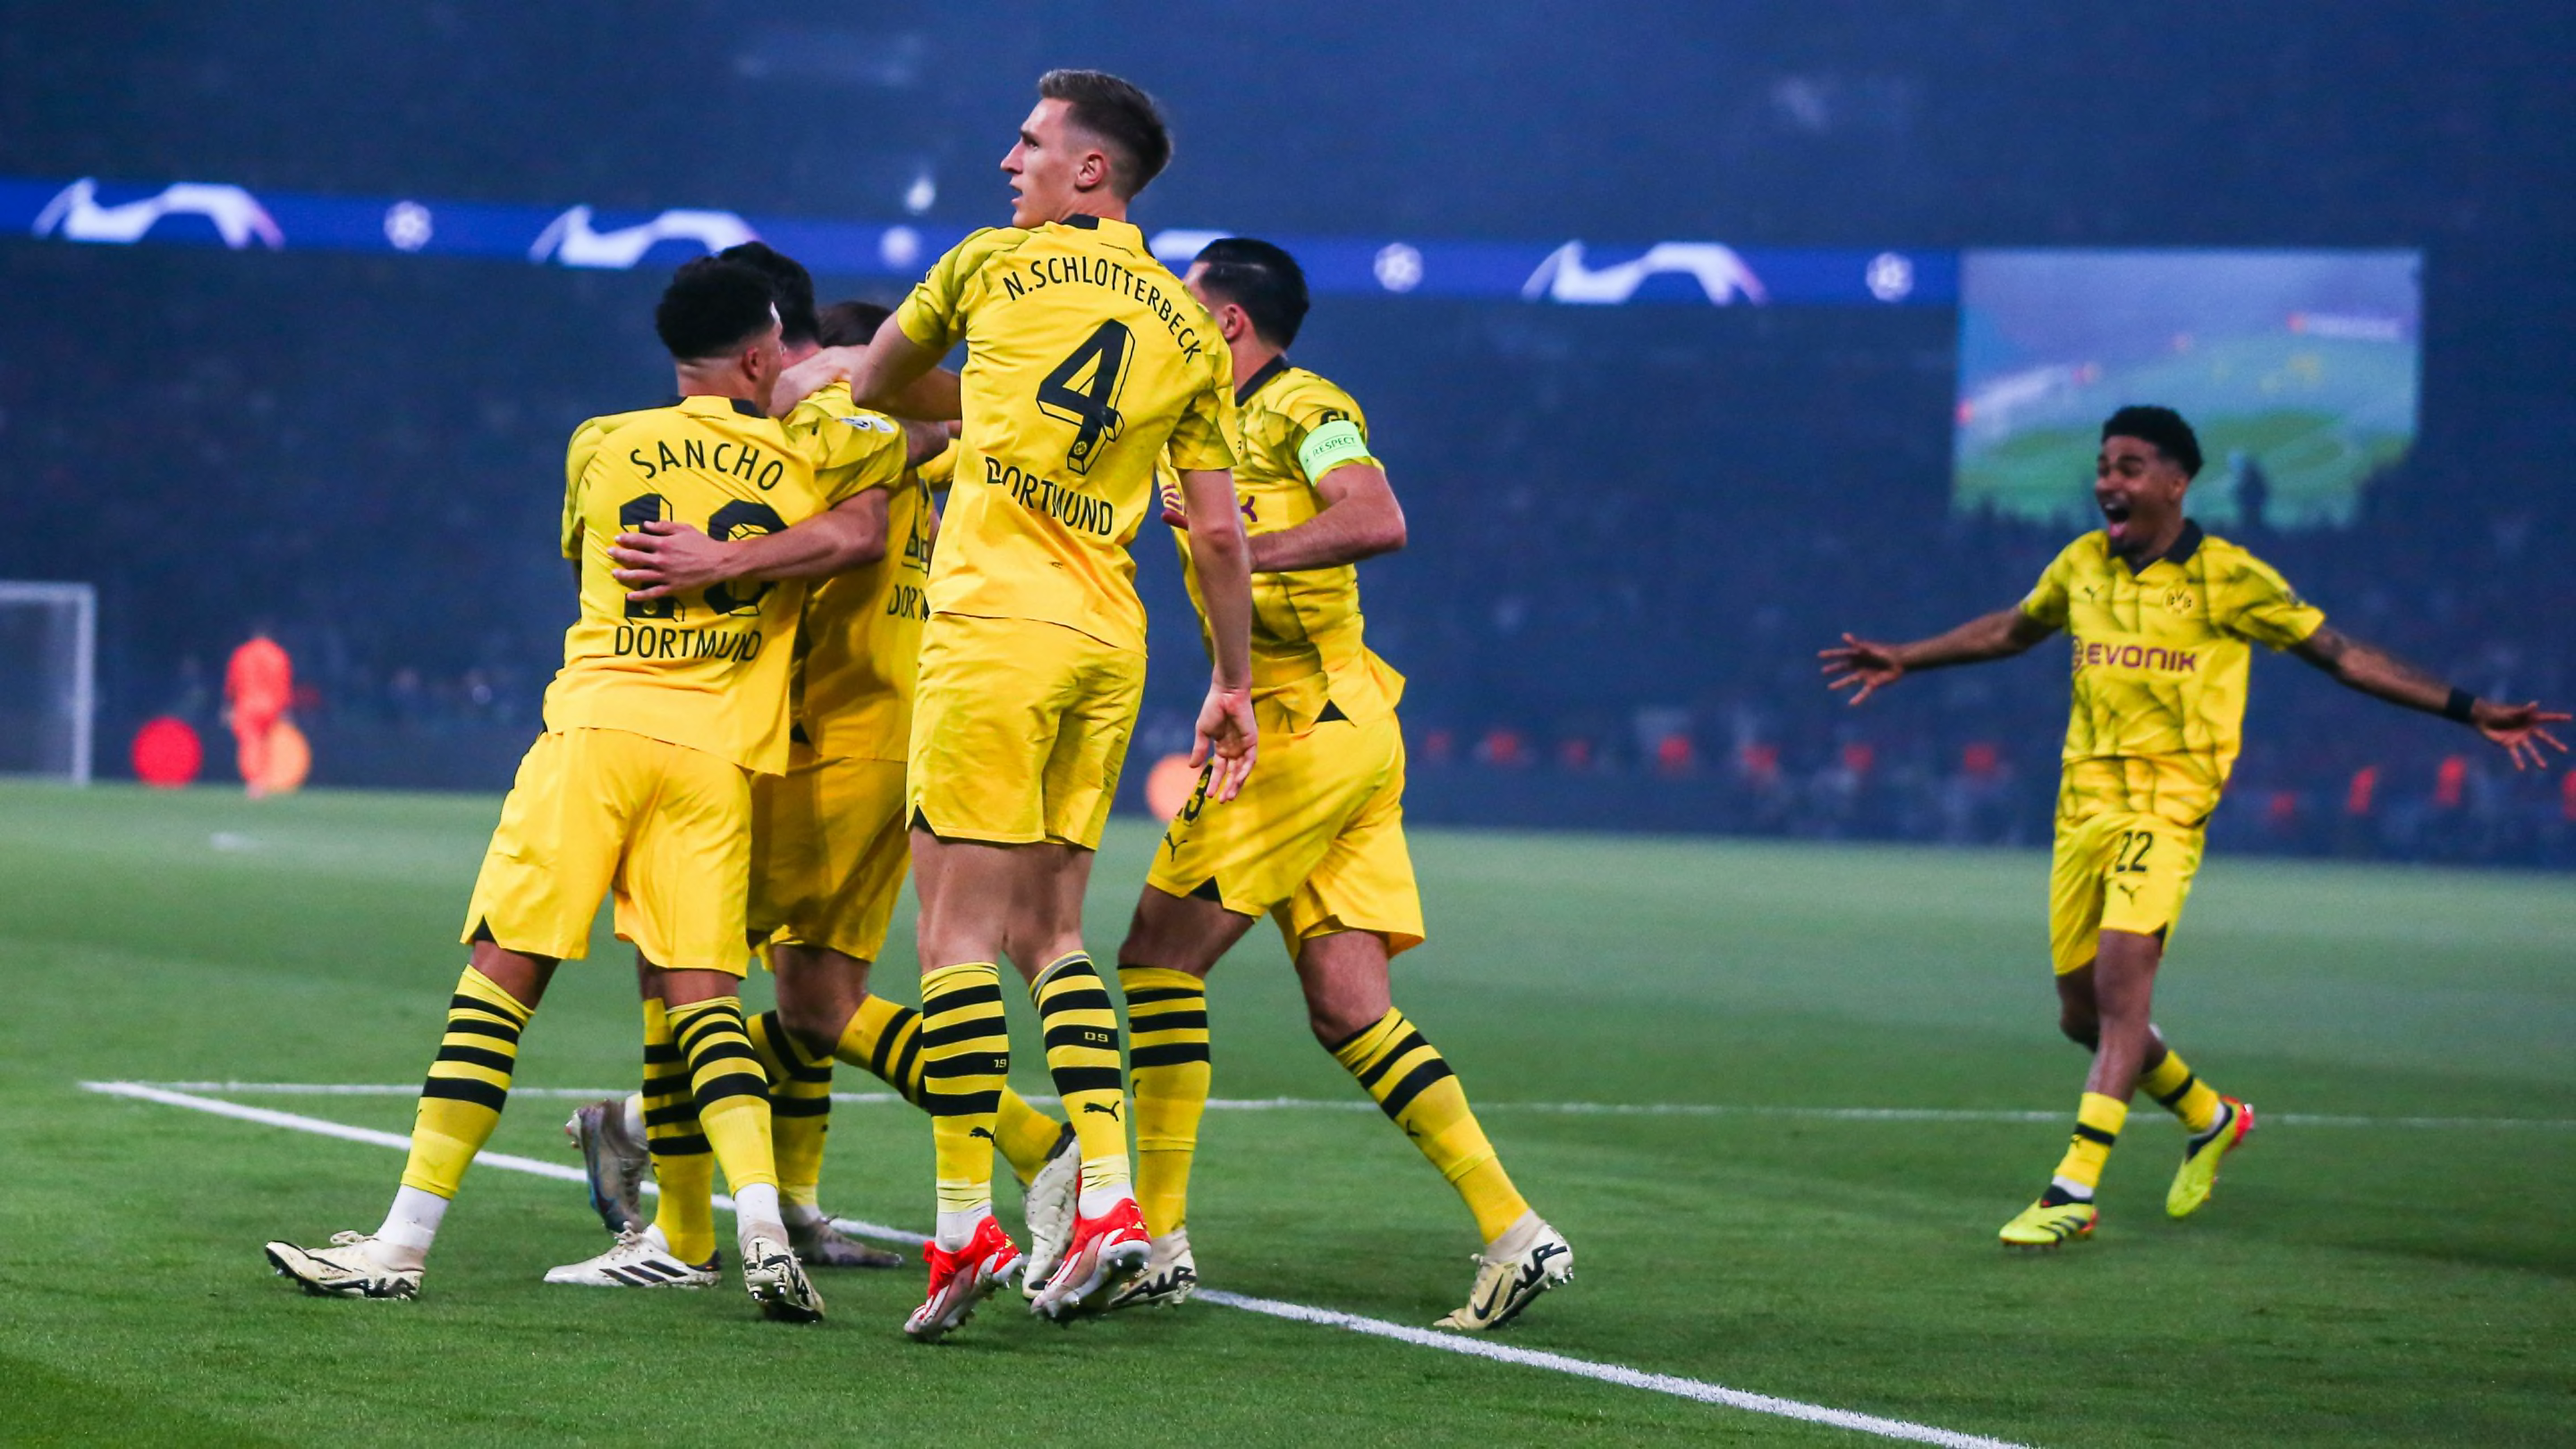 Quelles sont les chances de victoire du Borussia Dortmund en finale de Ligue des Champions selon l'I.A d'Opta ?